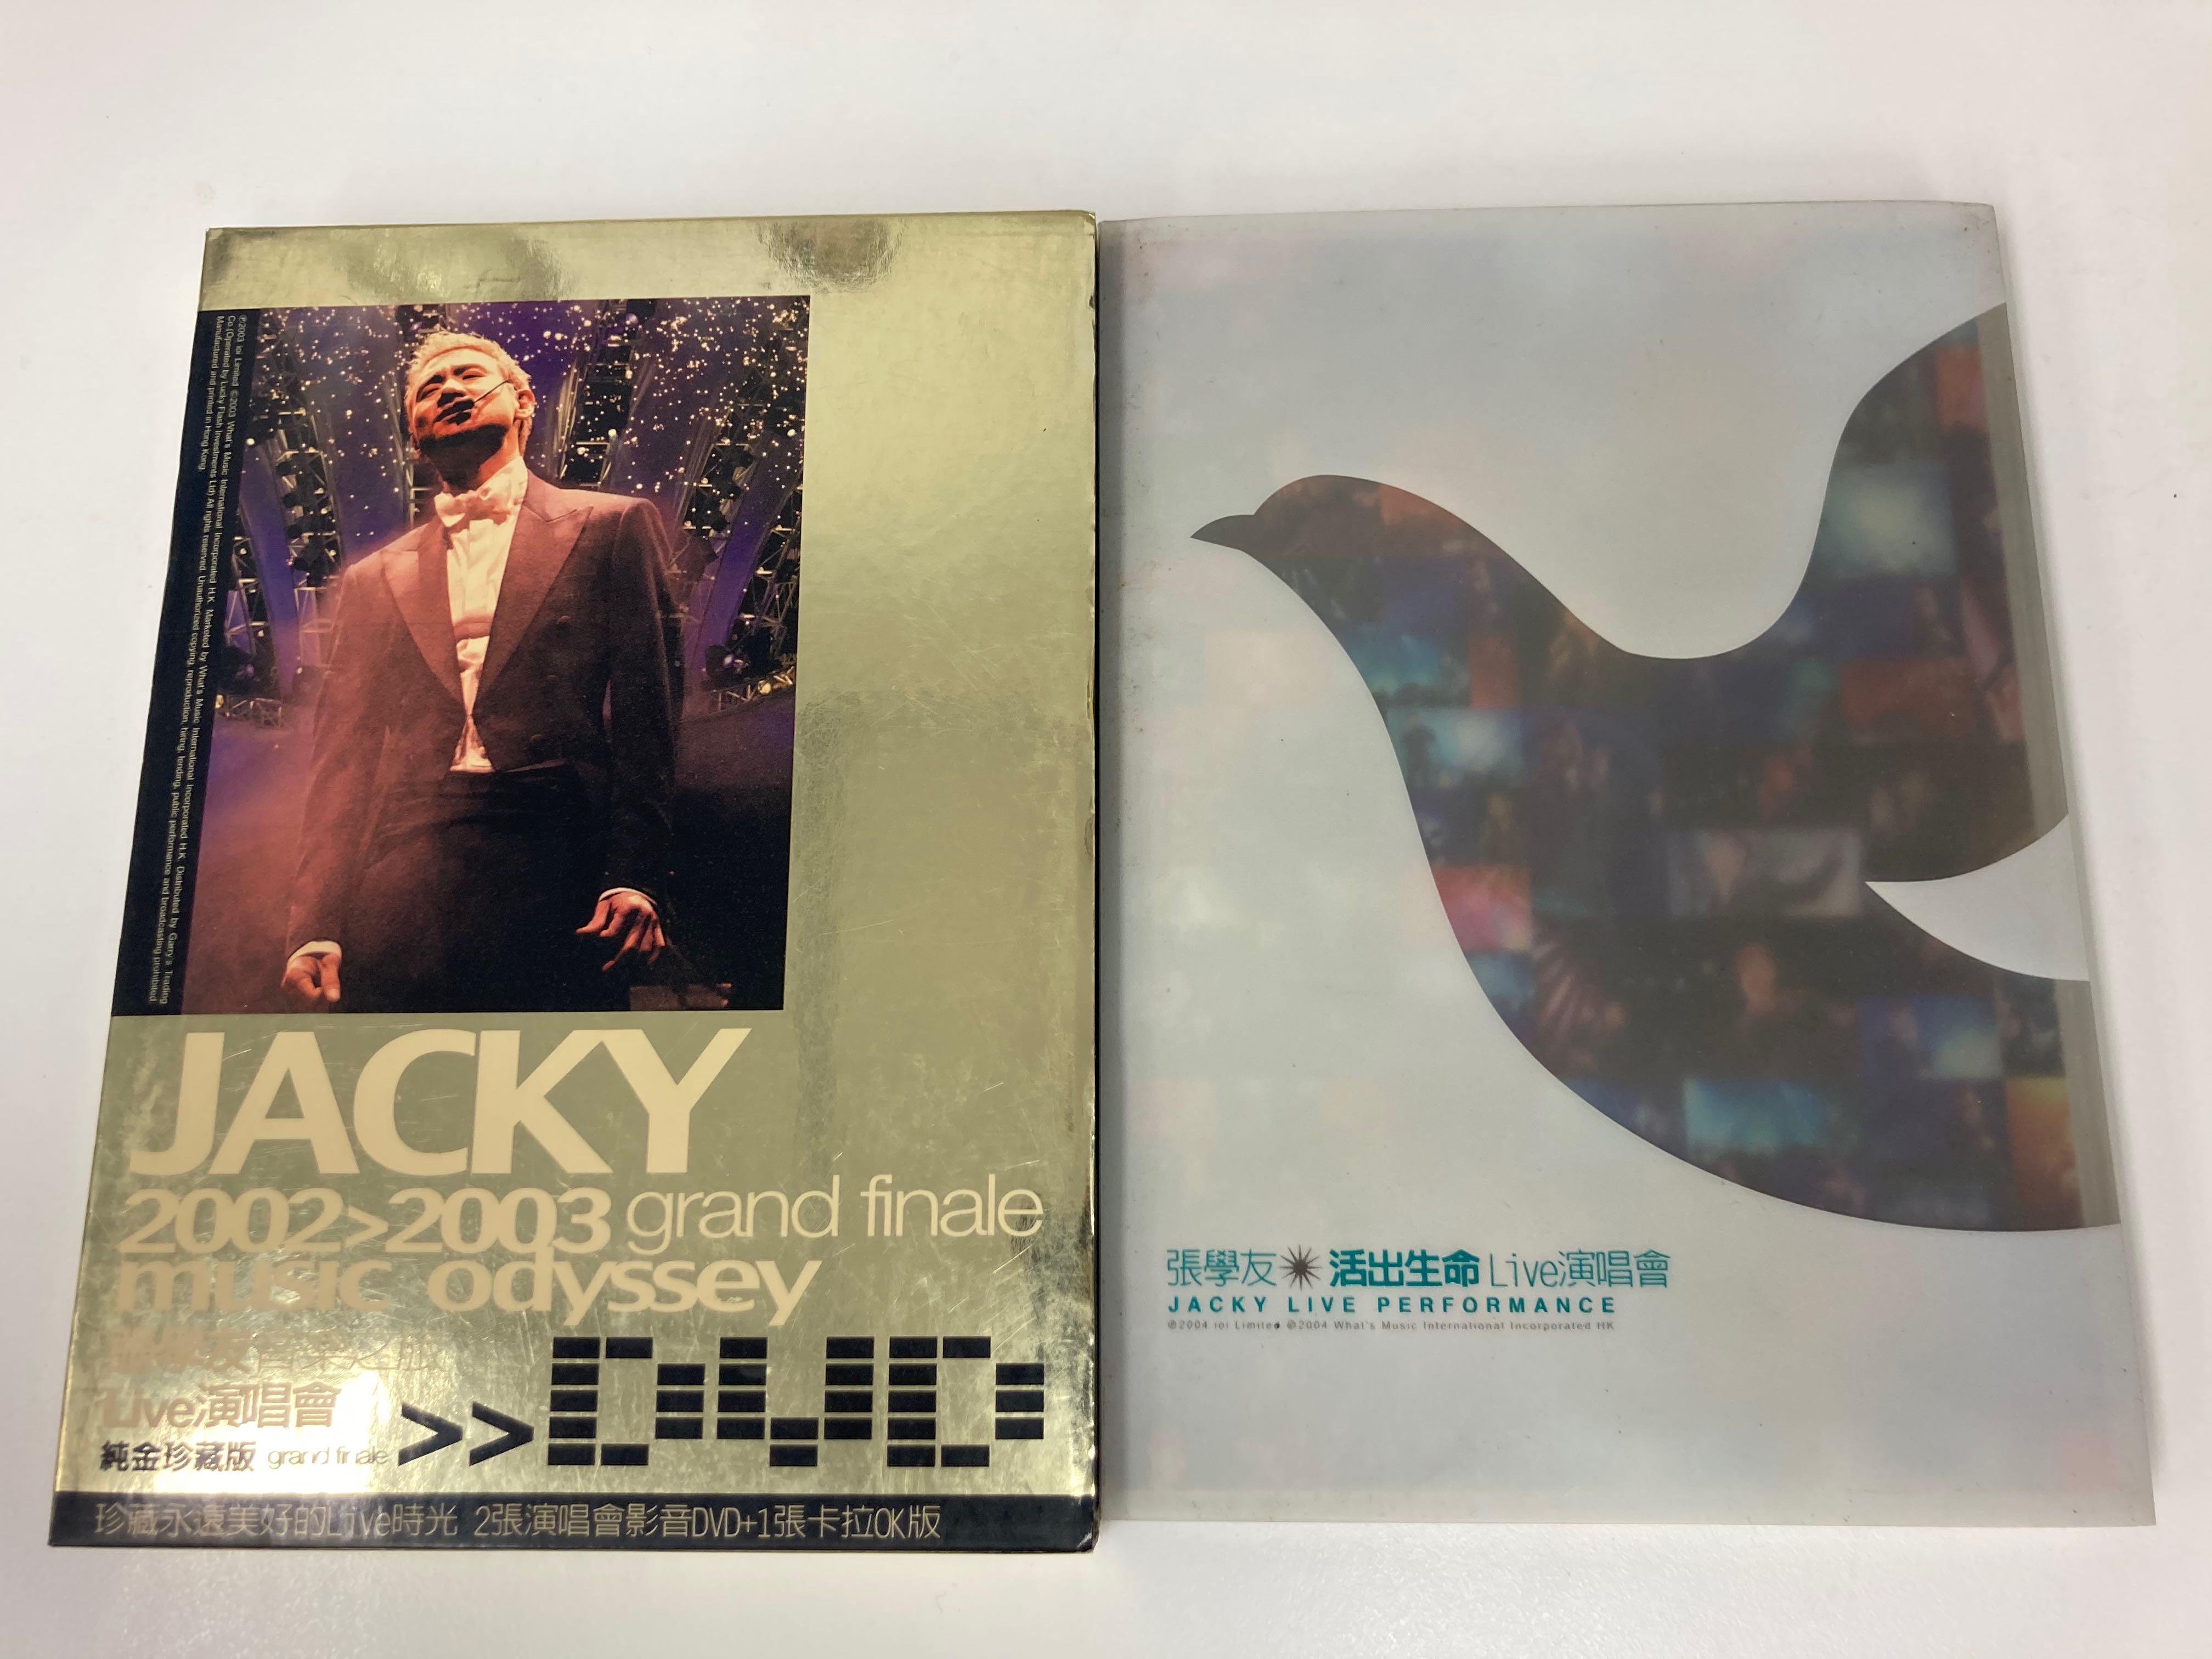 張學友Jacky Cheung 2002 2003 Grand Finale Music Odyssey 音樂之旅Live 演唱會3DVD  Jacky Live Performance 活出生活Live 演唱會2004 2CD, 興趣及遊戲, 音樂、樂器 配件, 音樂與媒體-